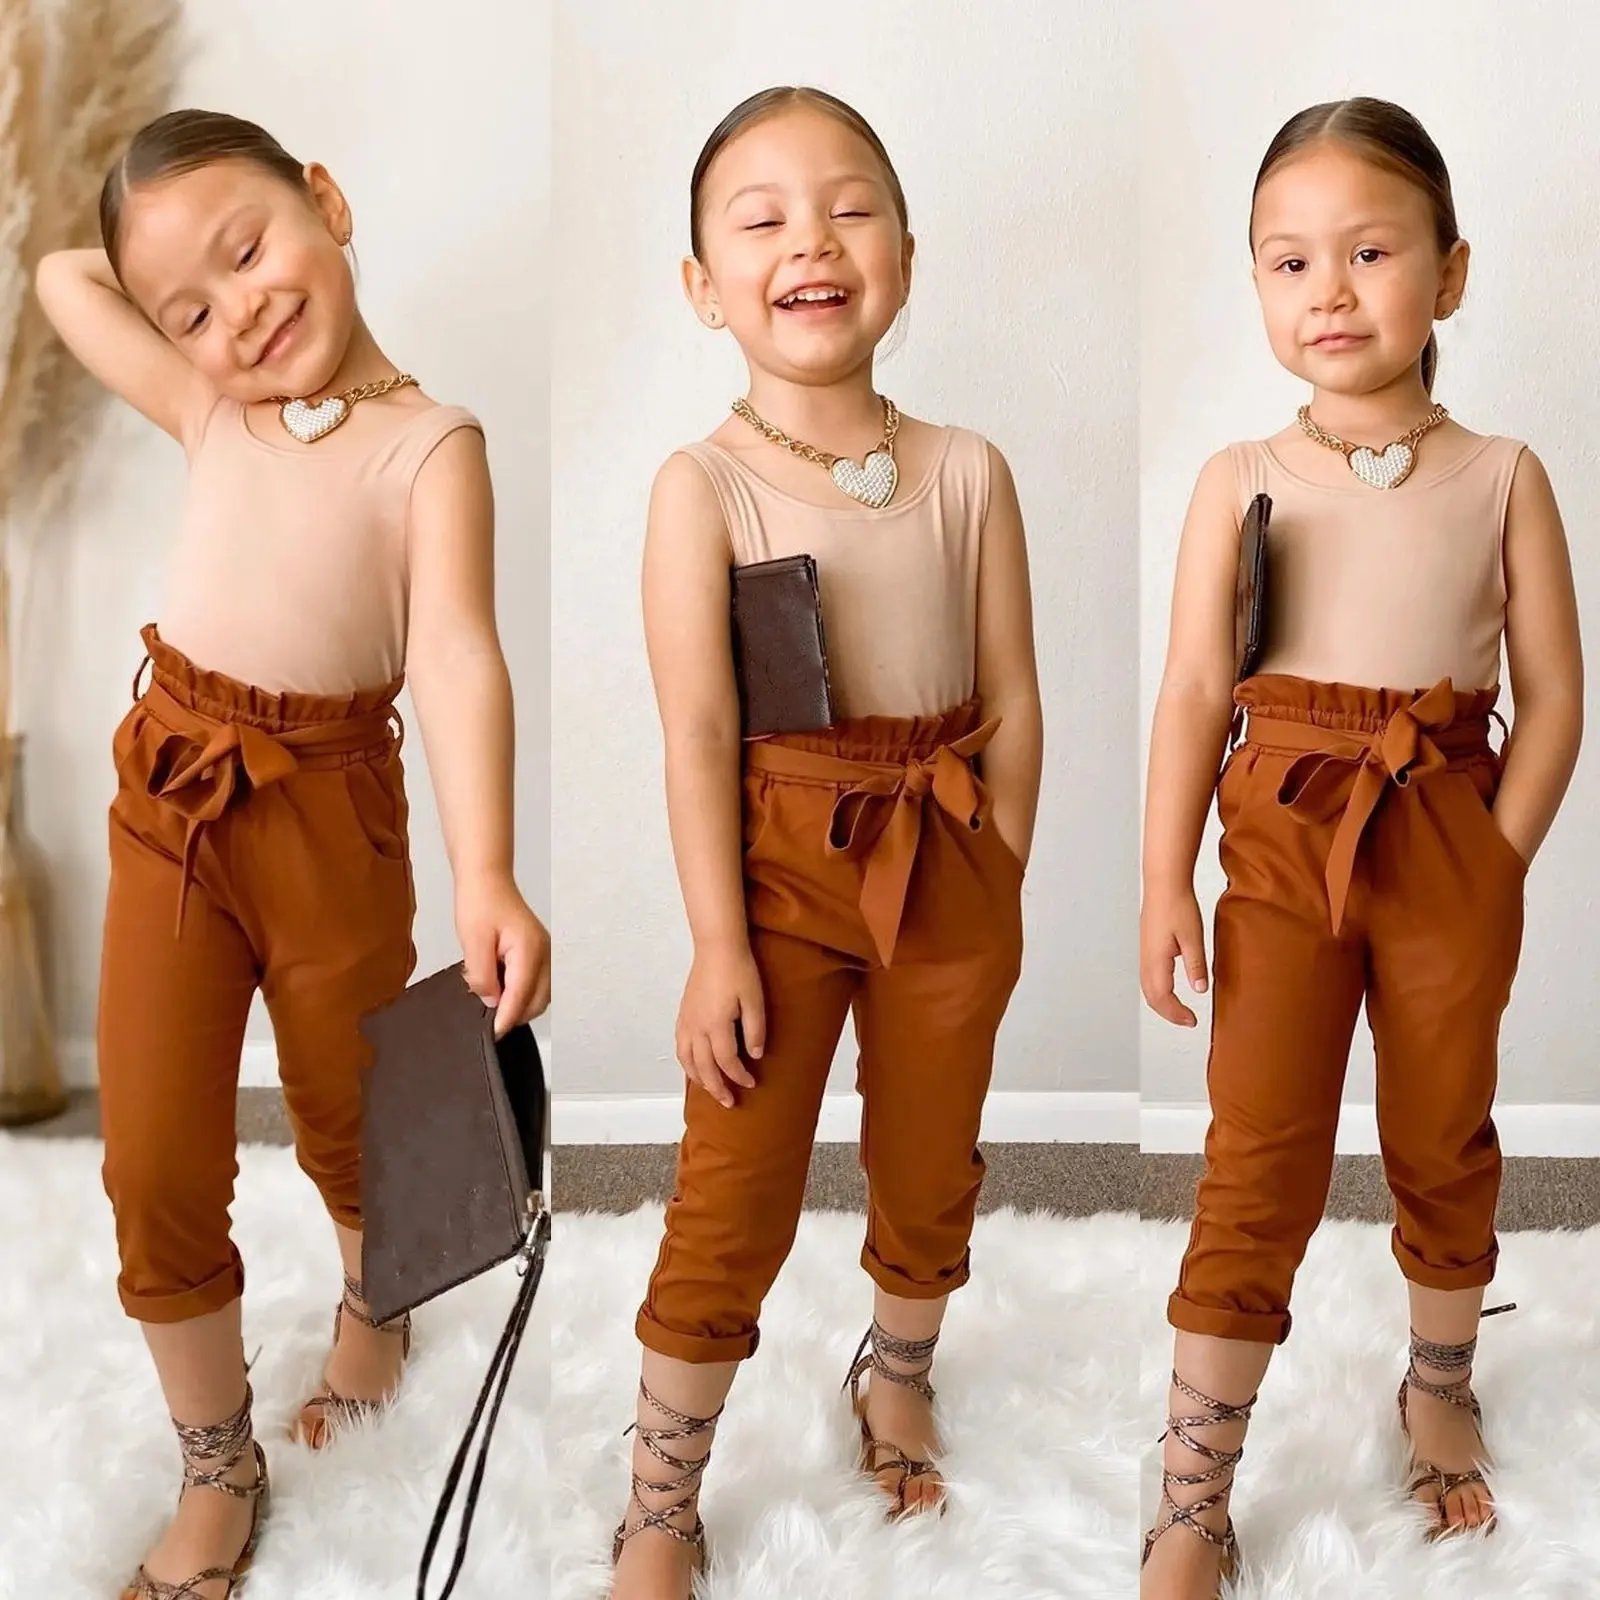 LFQ-472 गर्मियों में बच्चों के कपड़े 2021 डिजाइनर बच्चों के कपड़े सेट बच्चे को कपड़े लड़कियों थोक छोटी लड़कियों कपड़े बुटीक गर्मियों